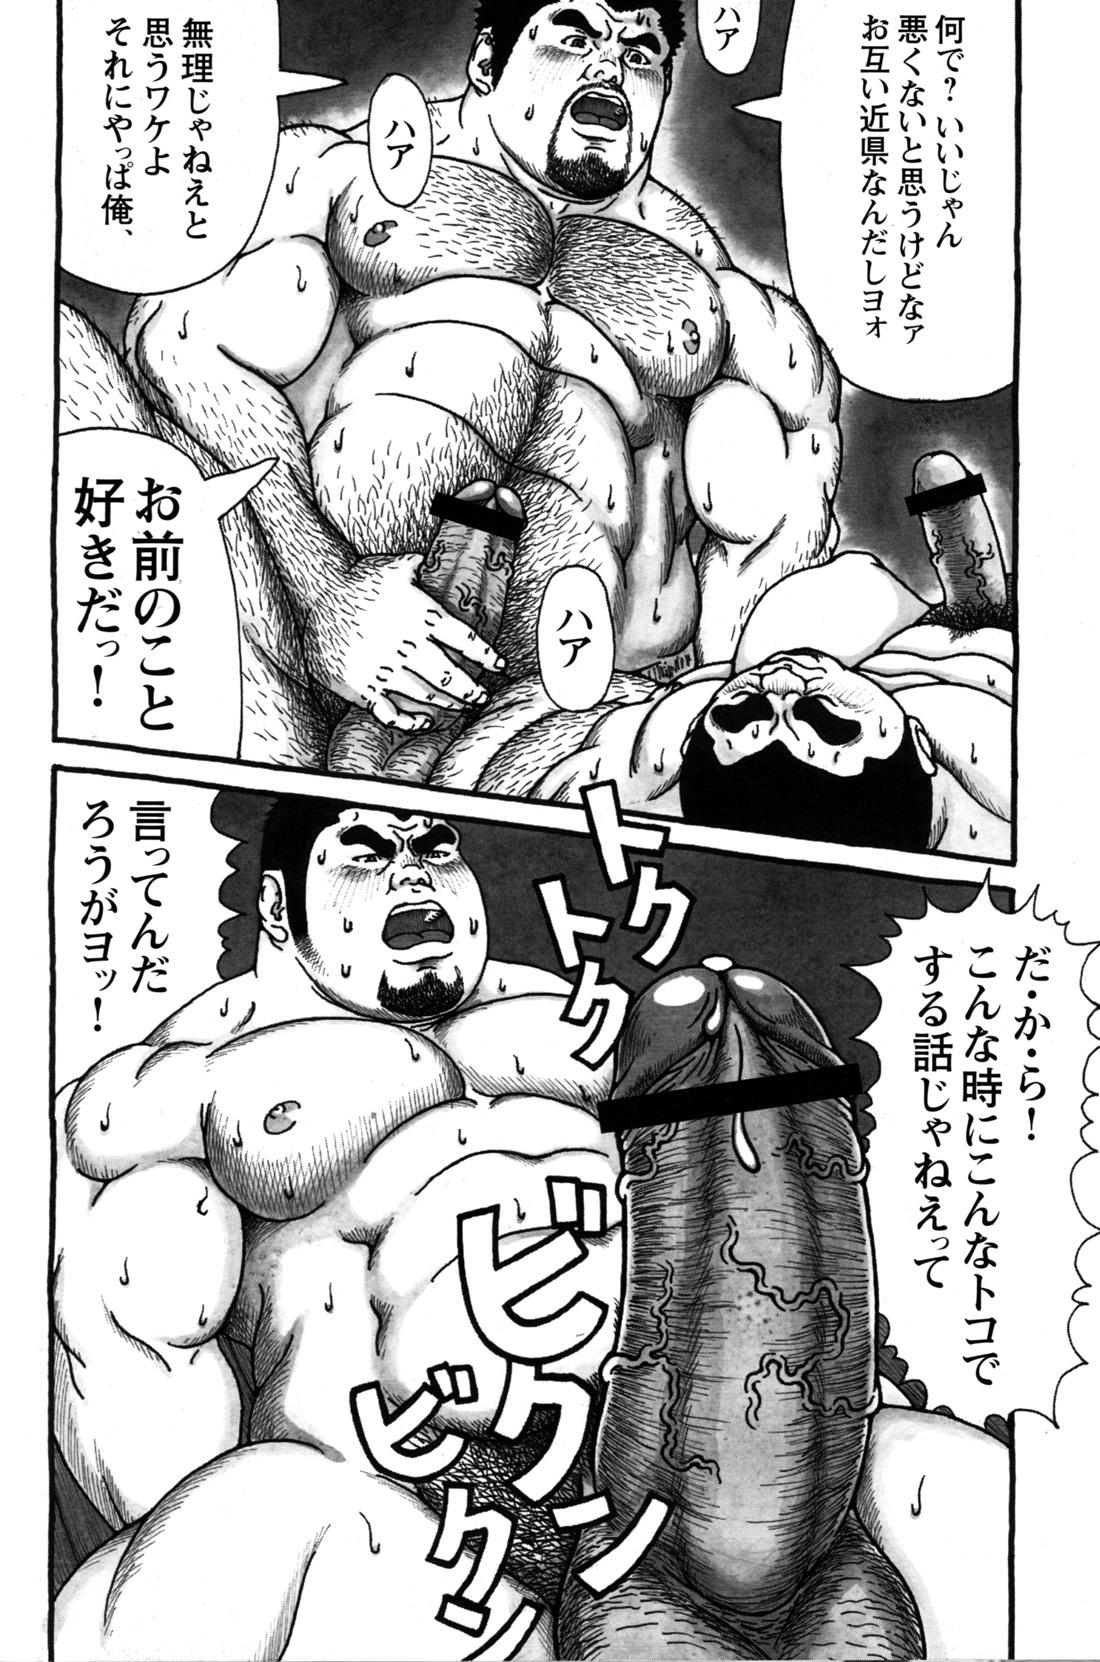 Comic G-men Gaho No.09 Gacchibi Zeme 156